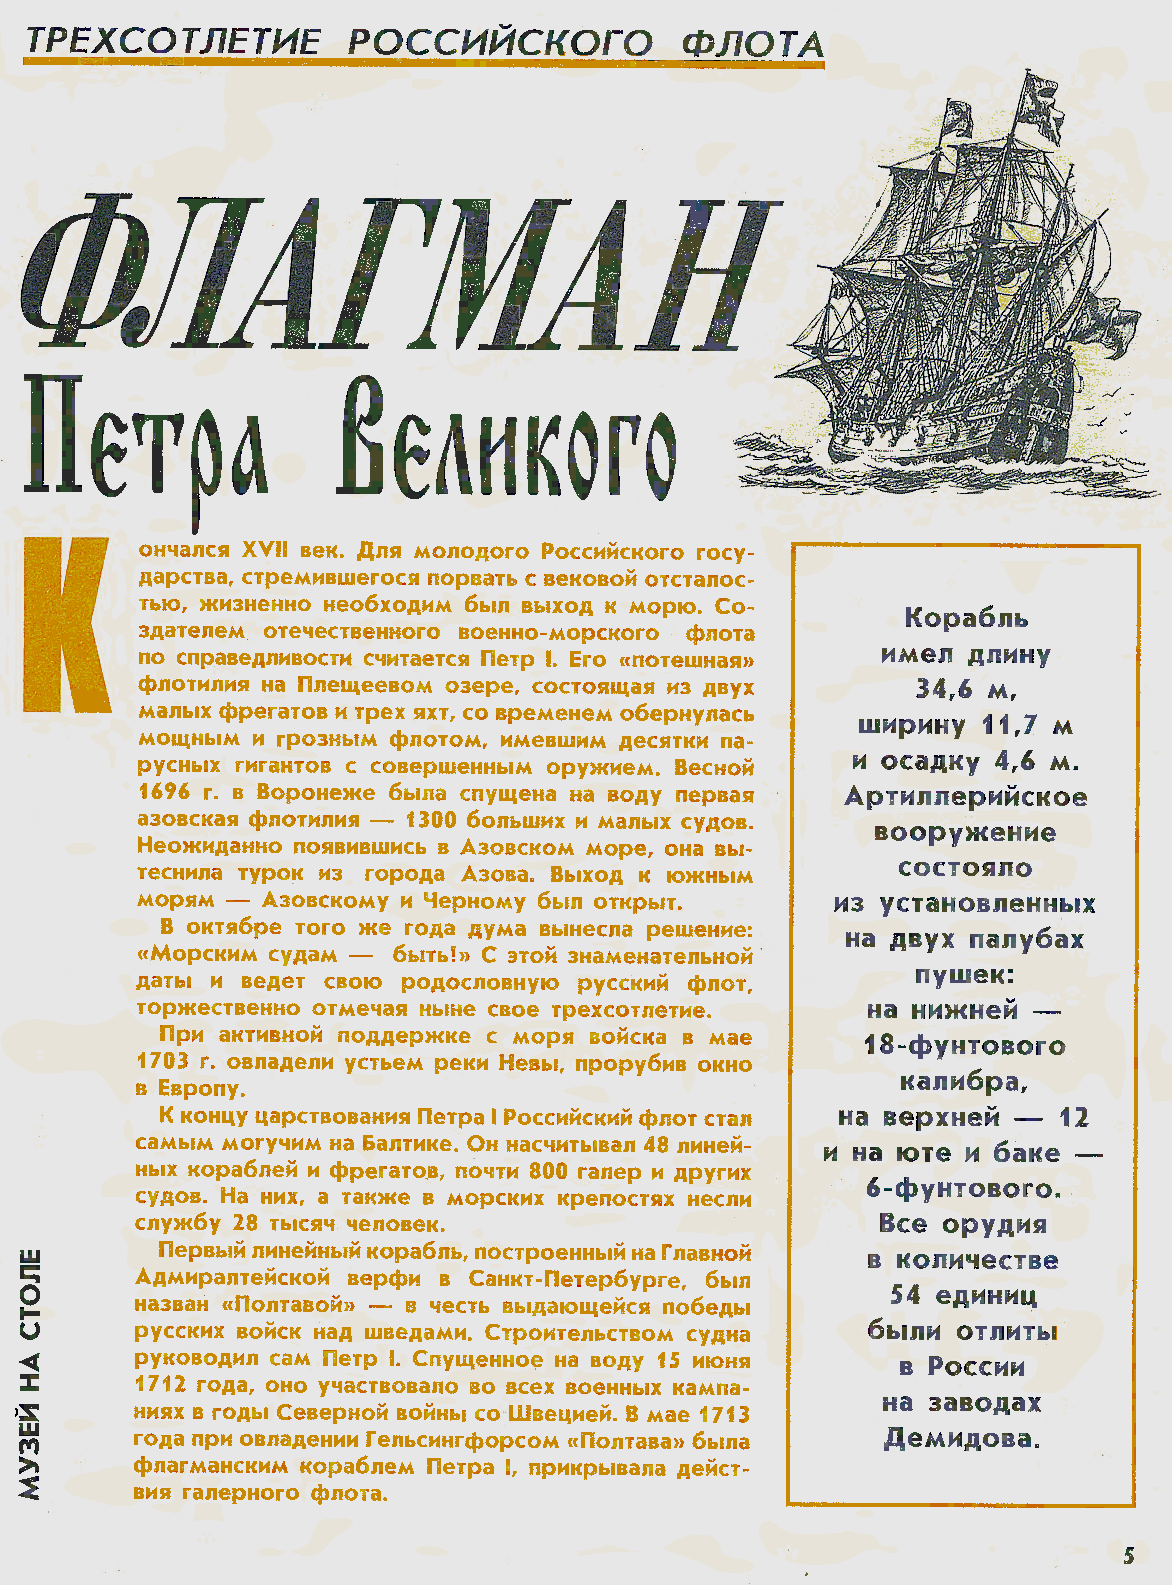 "Левша" 8, 1996, 5 c.